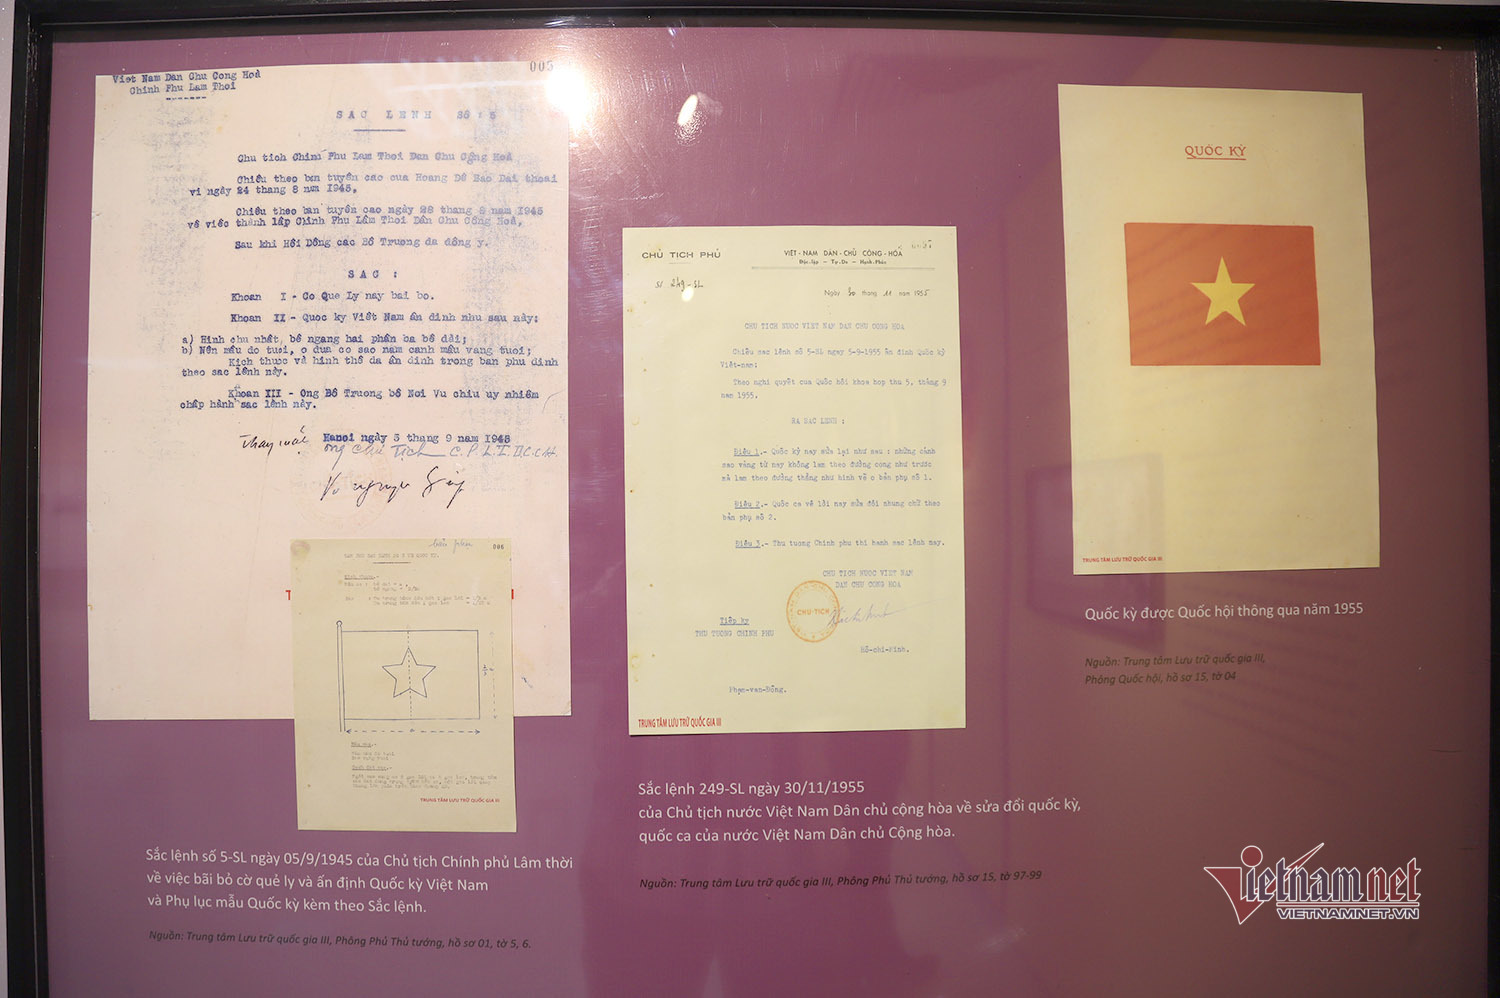 Quốc kỳ, Quốc ca, Quốc huy và hành trình trở thành biểu tượng Việt Nam